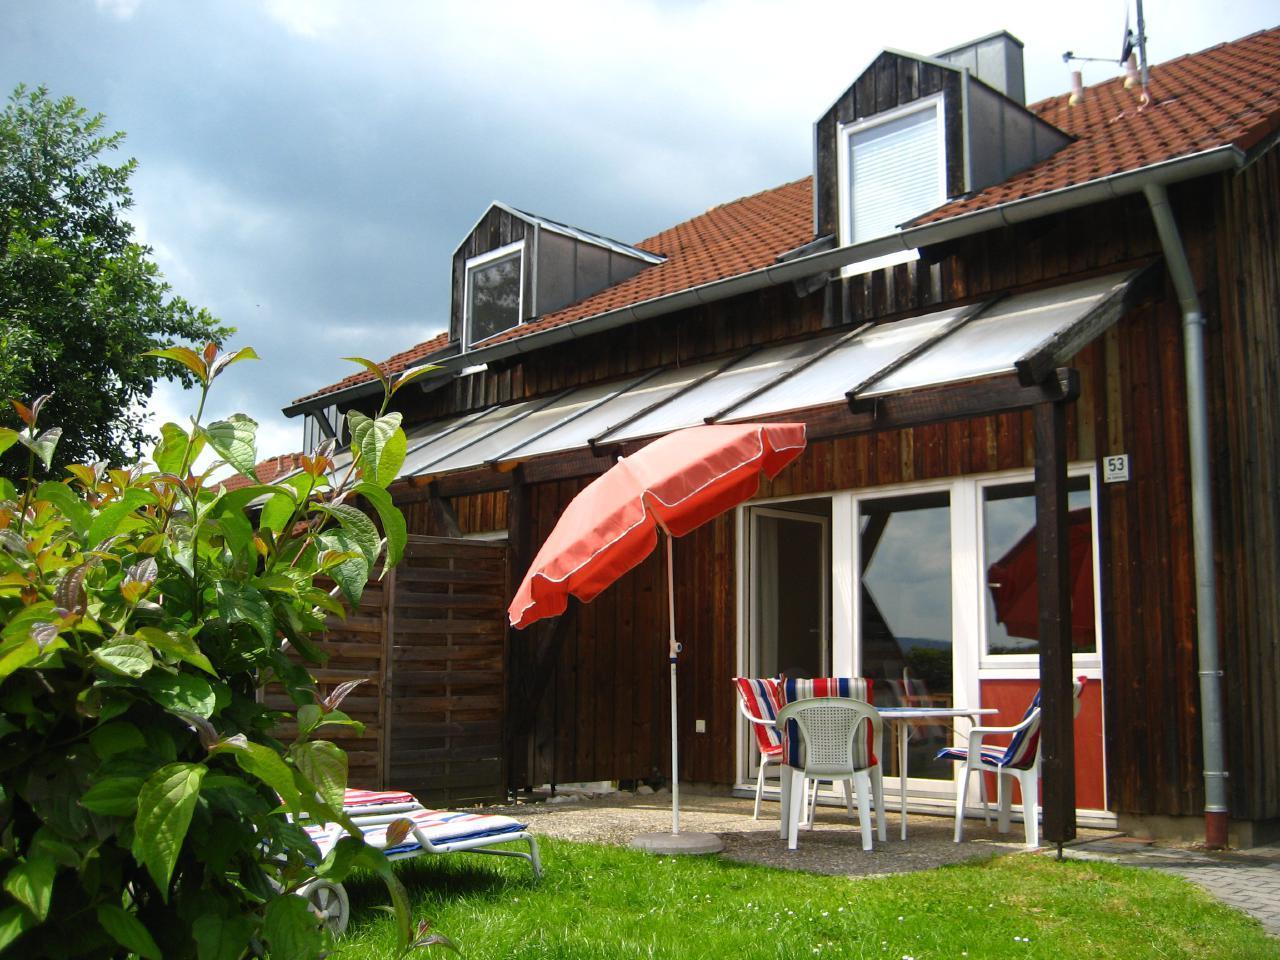 Ferienhaus in Zandt mit Grill, Garten und Terrasse   Zandt